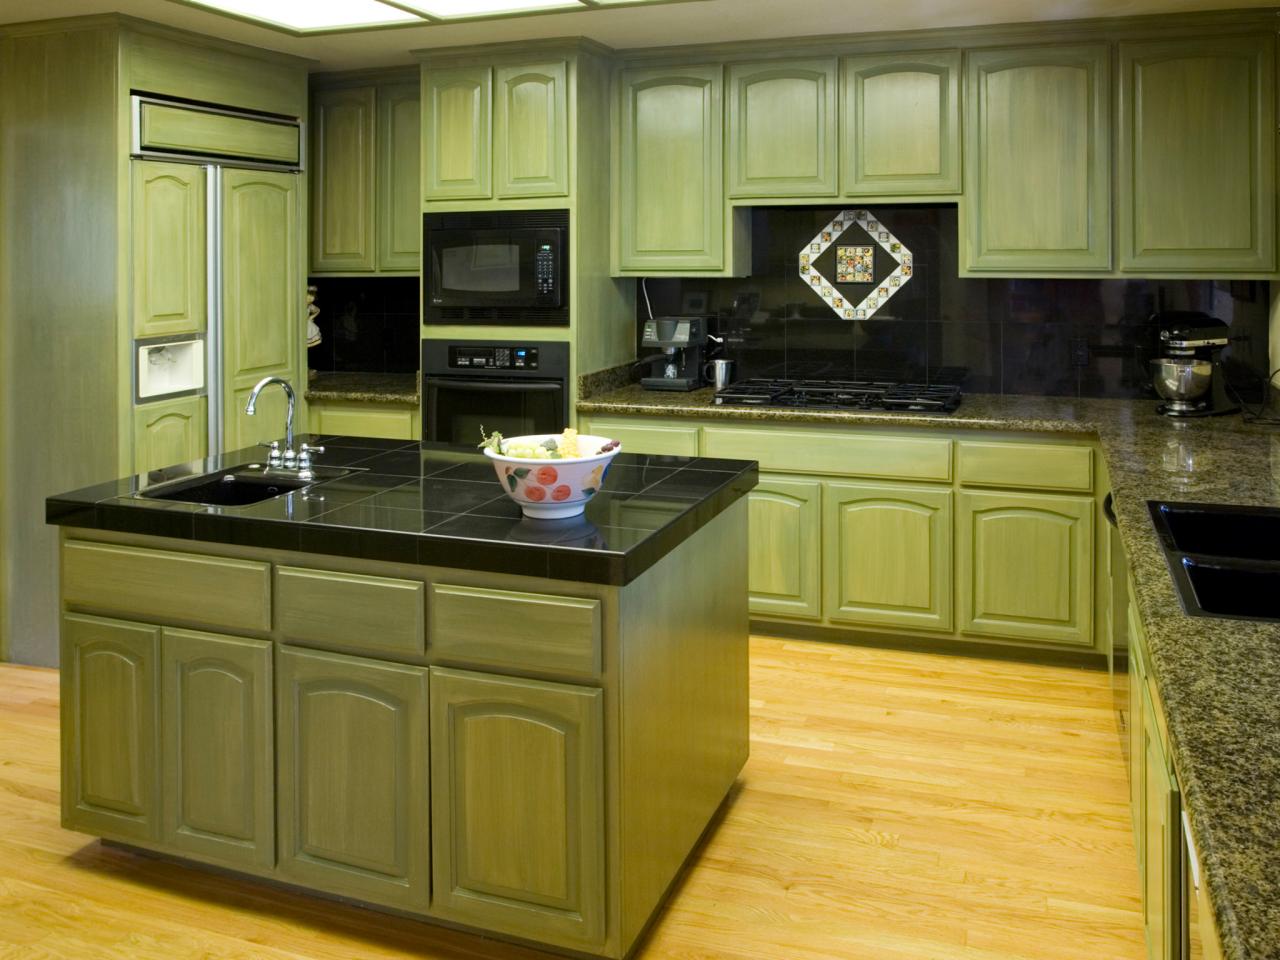 Stylish Red Kitchen Cabinets kitchen cabinet design ideas